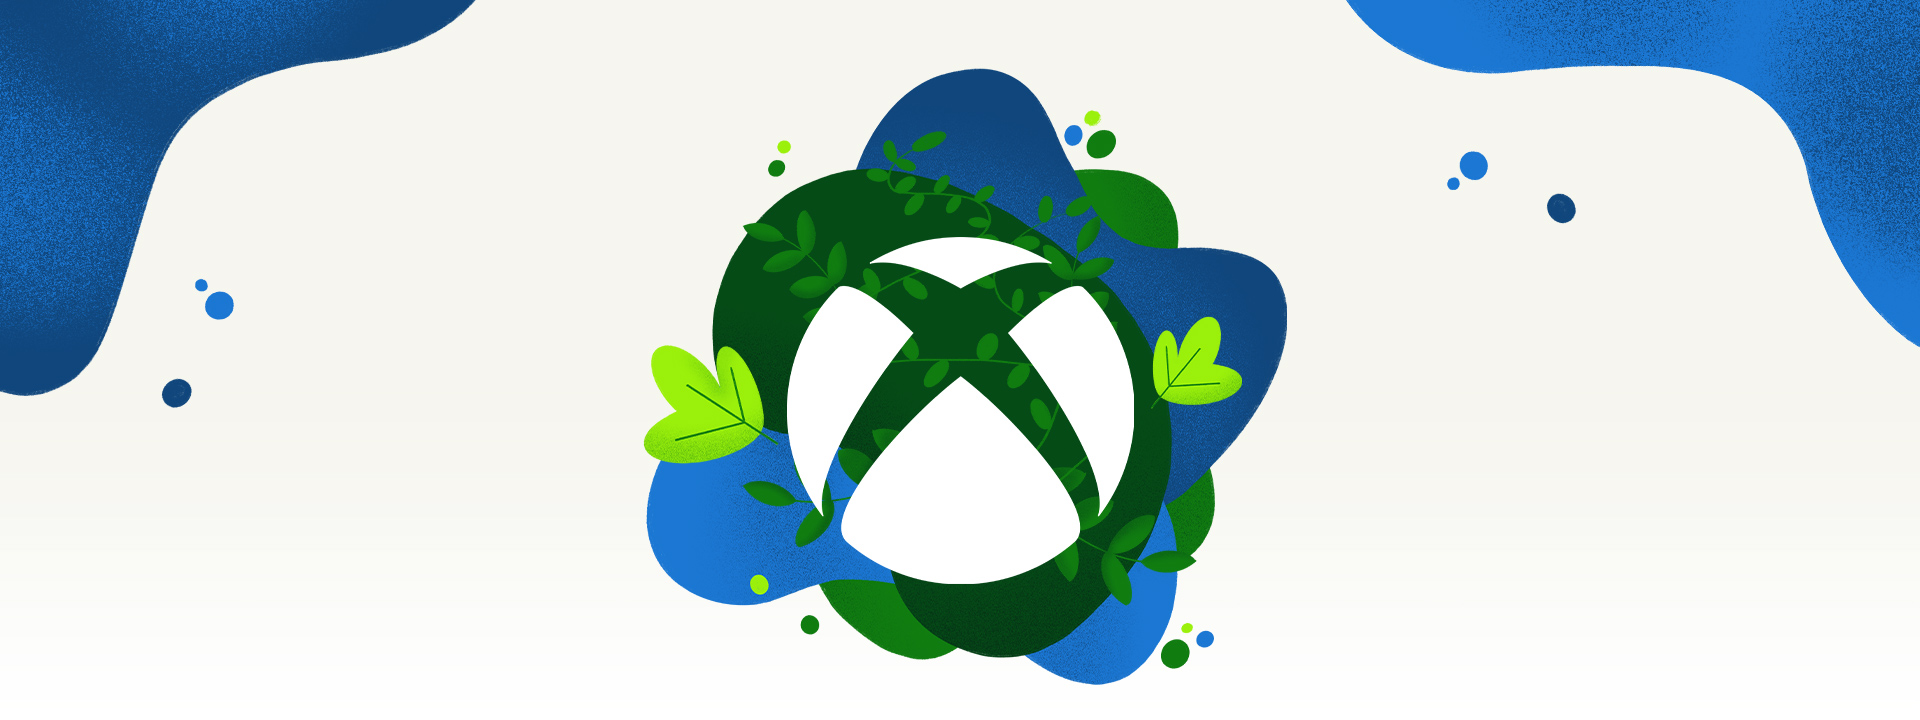 Un logo Xbox entouré de végétaux et de projections d'eau bleue.